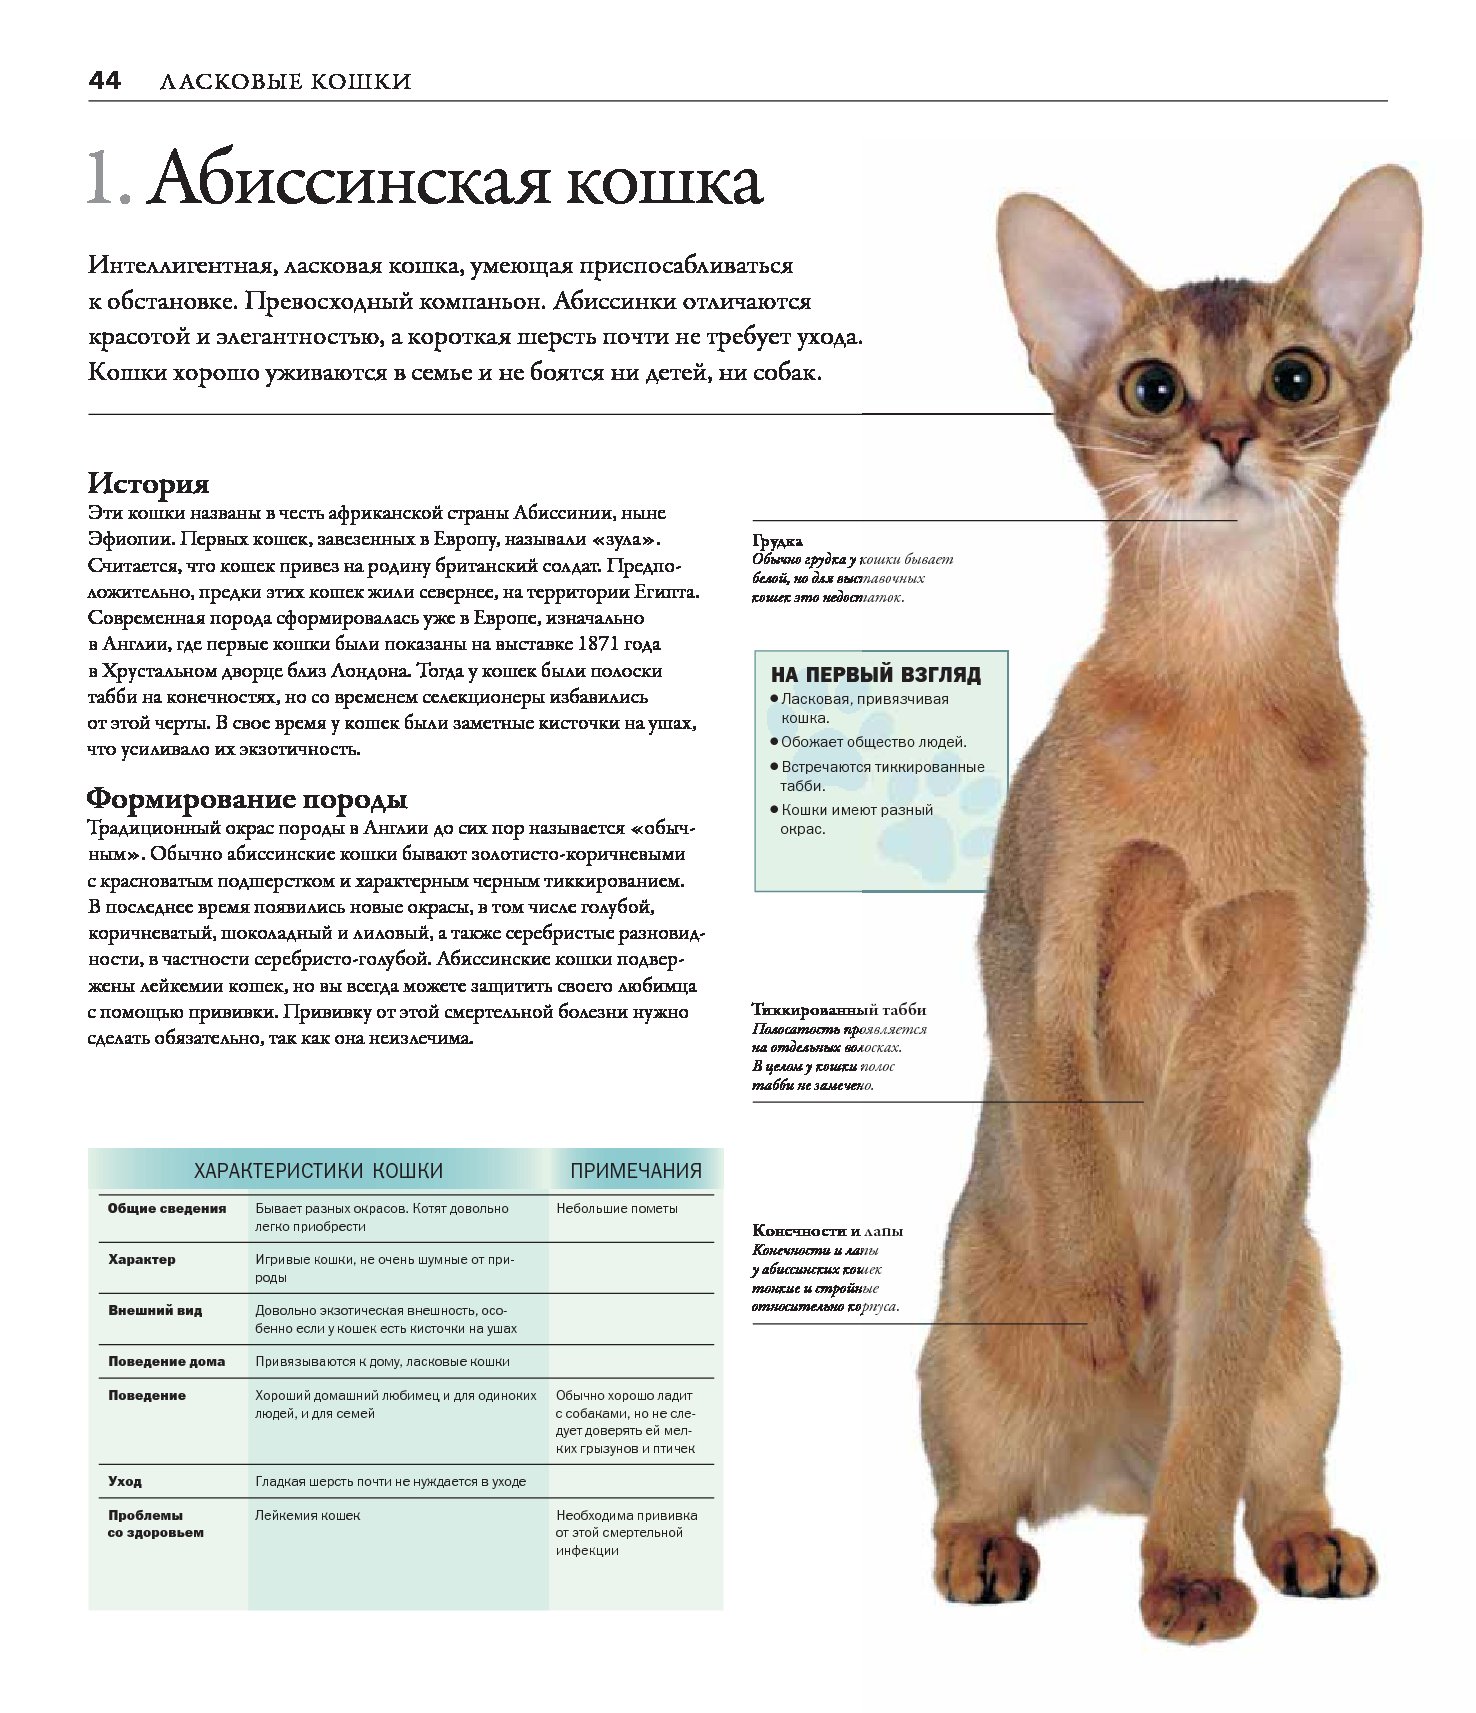 Породы кошек количество. Описать породу кошки Абиссинская. Абиссинская кошка описание породы. Норма веса Абиссинской кошки. Абиссинская кошка стандарт.